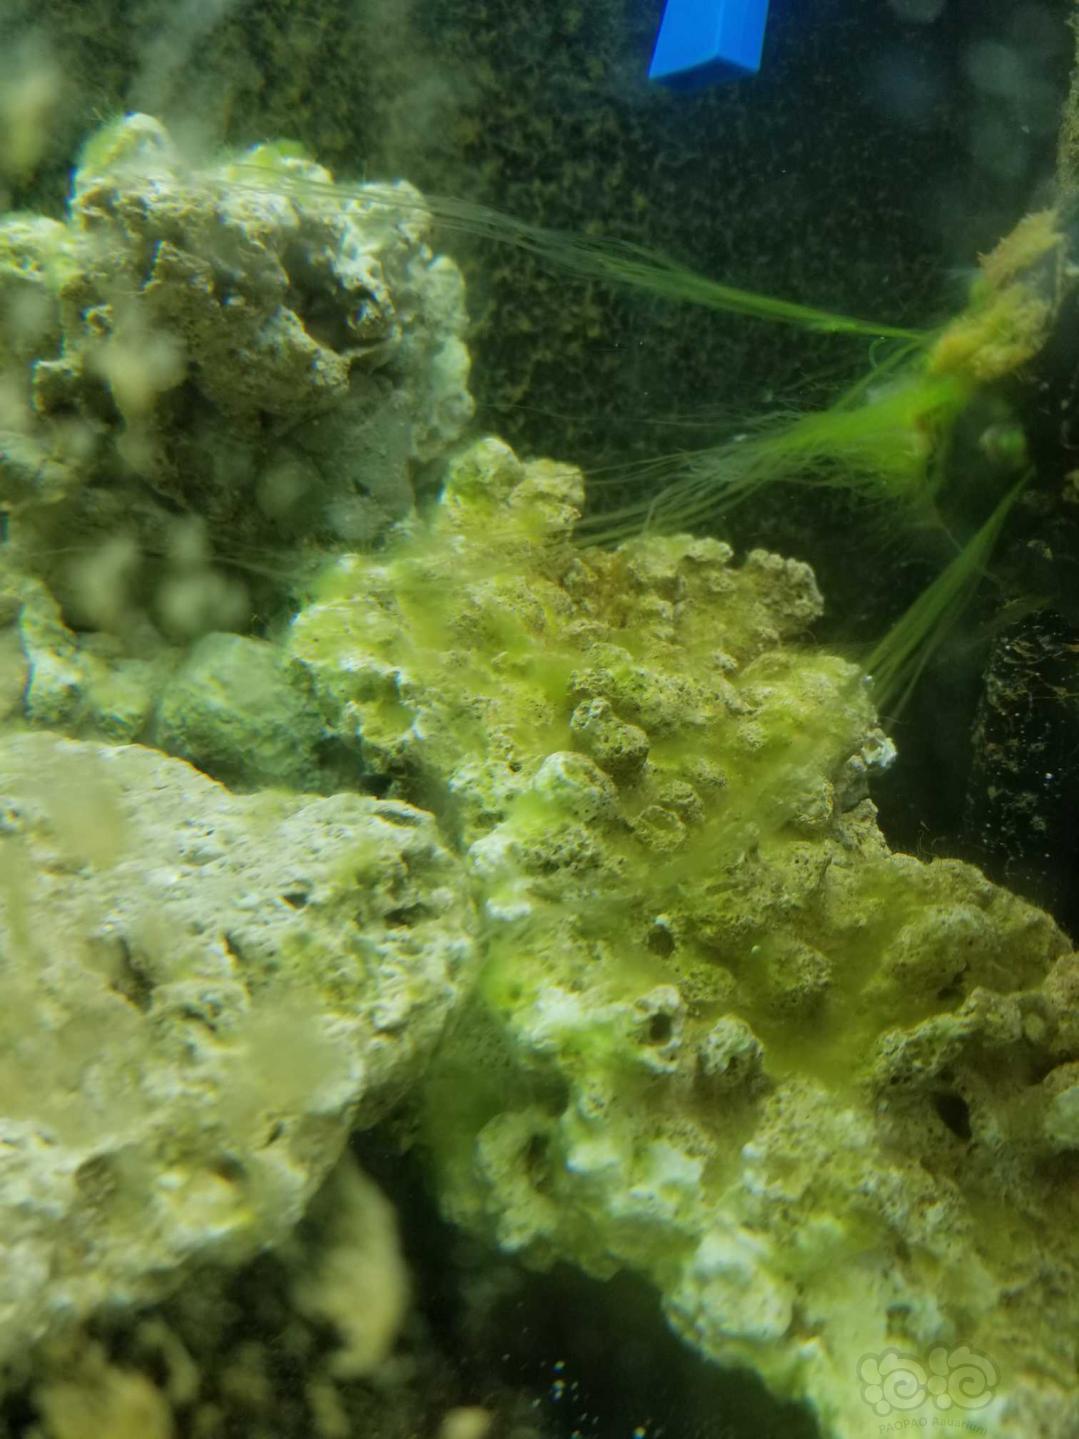 菌膜全部褪去了，就是绿藻长得有点慢-图3